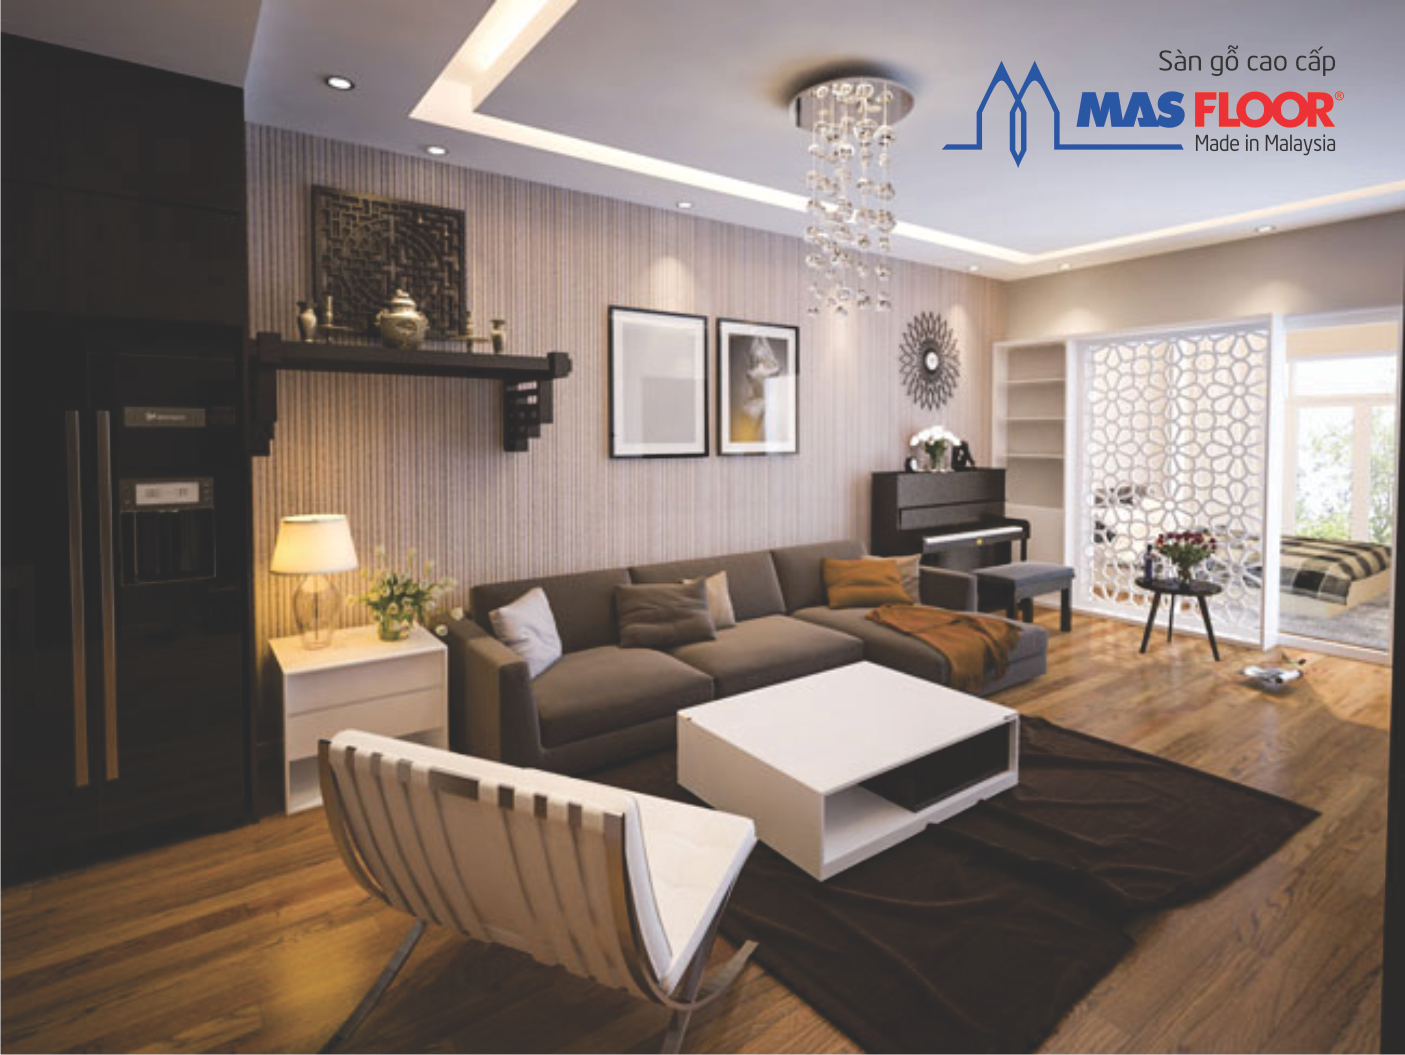 Tùy thuộc vào phong cách nội thất mà bạn có thể lựa chọn loại sàn gỗ thích hợp nhất